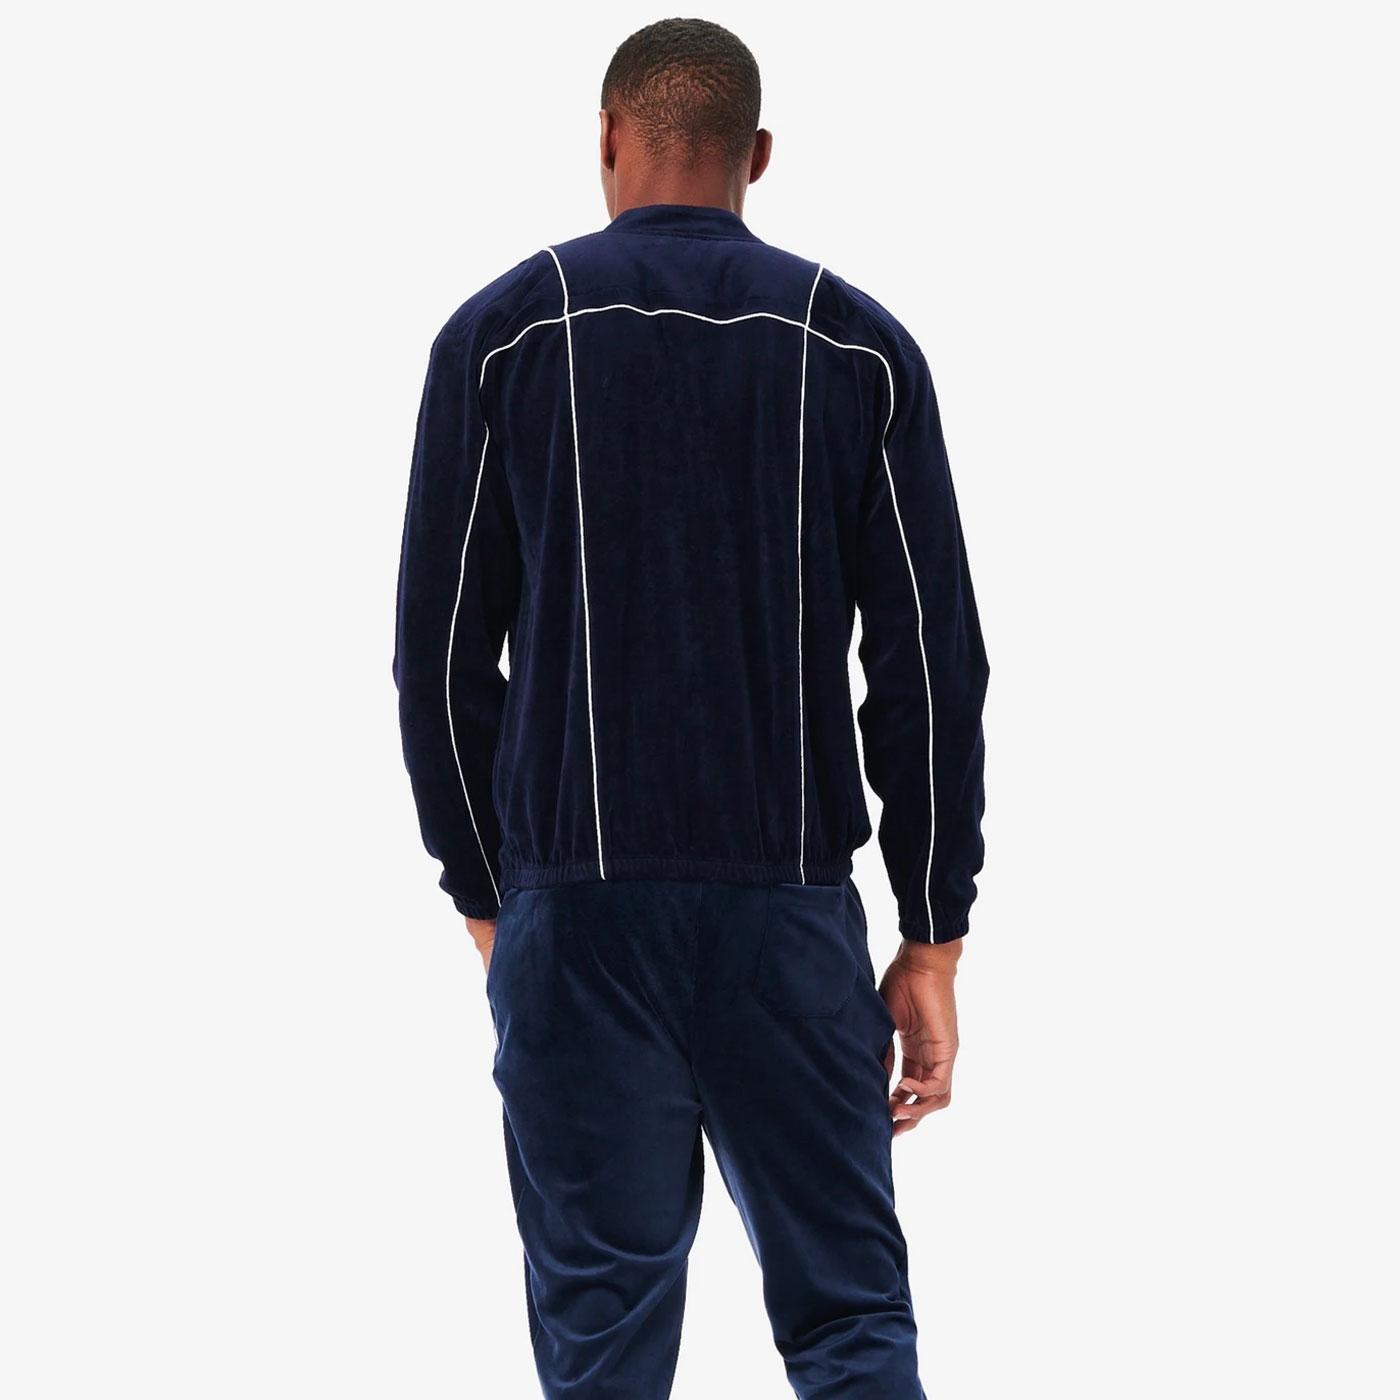 FILA velour leggings (navy blue)